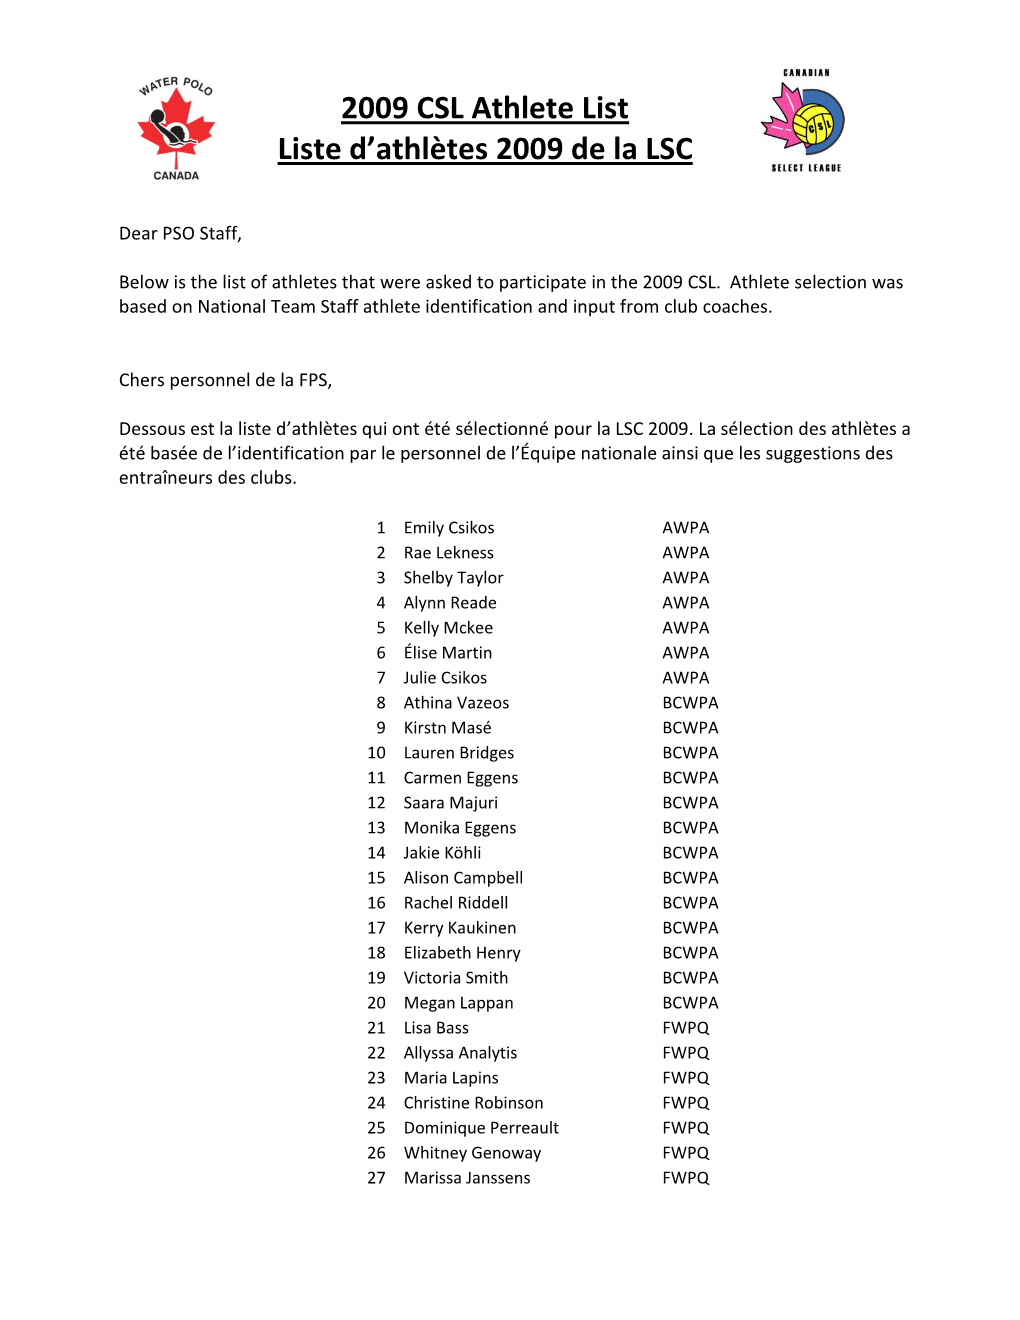 2009 CSL Athlete List Liste D'athlètes 2009 De La